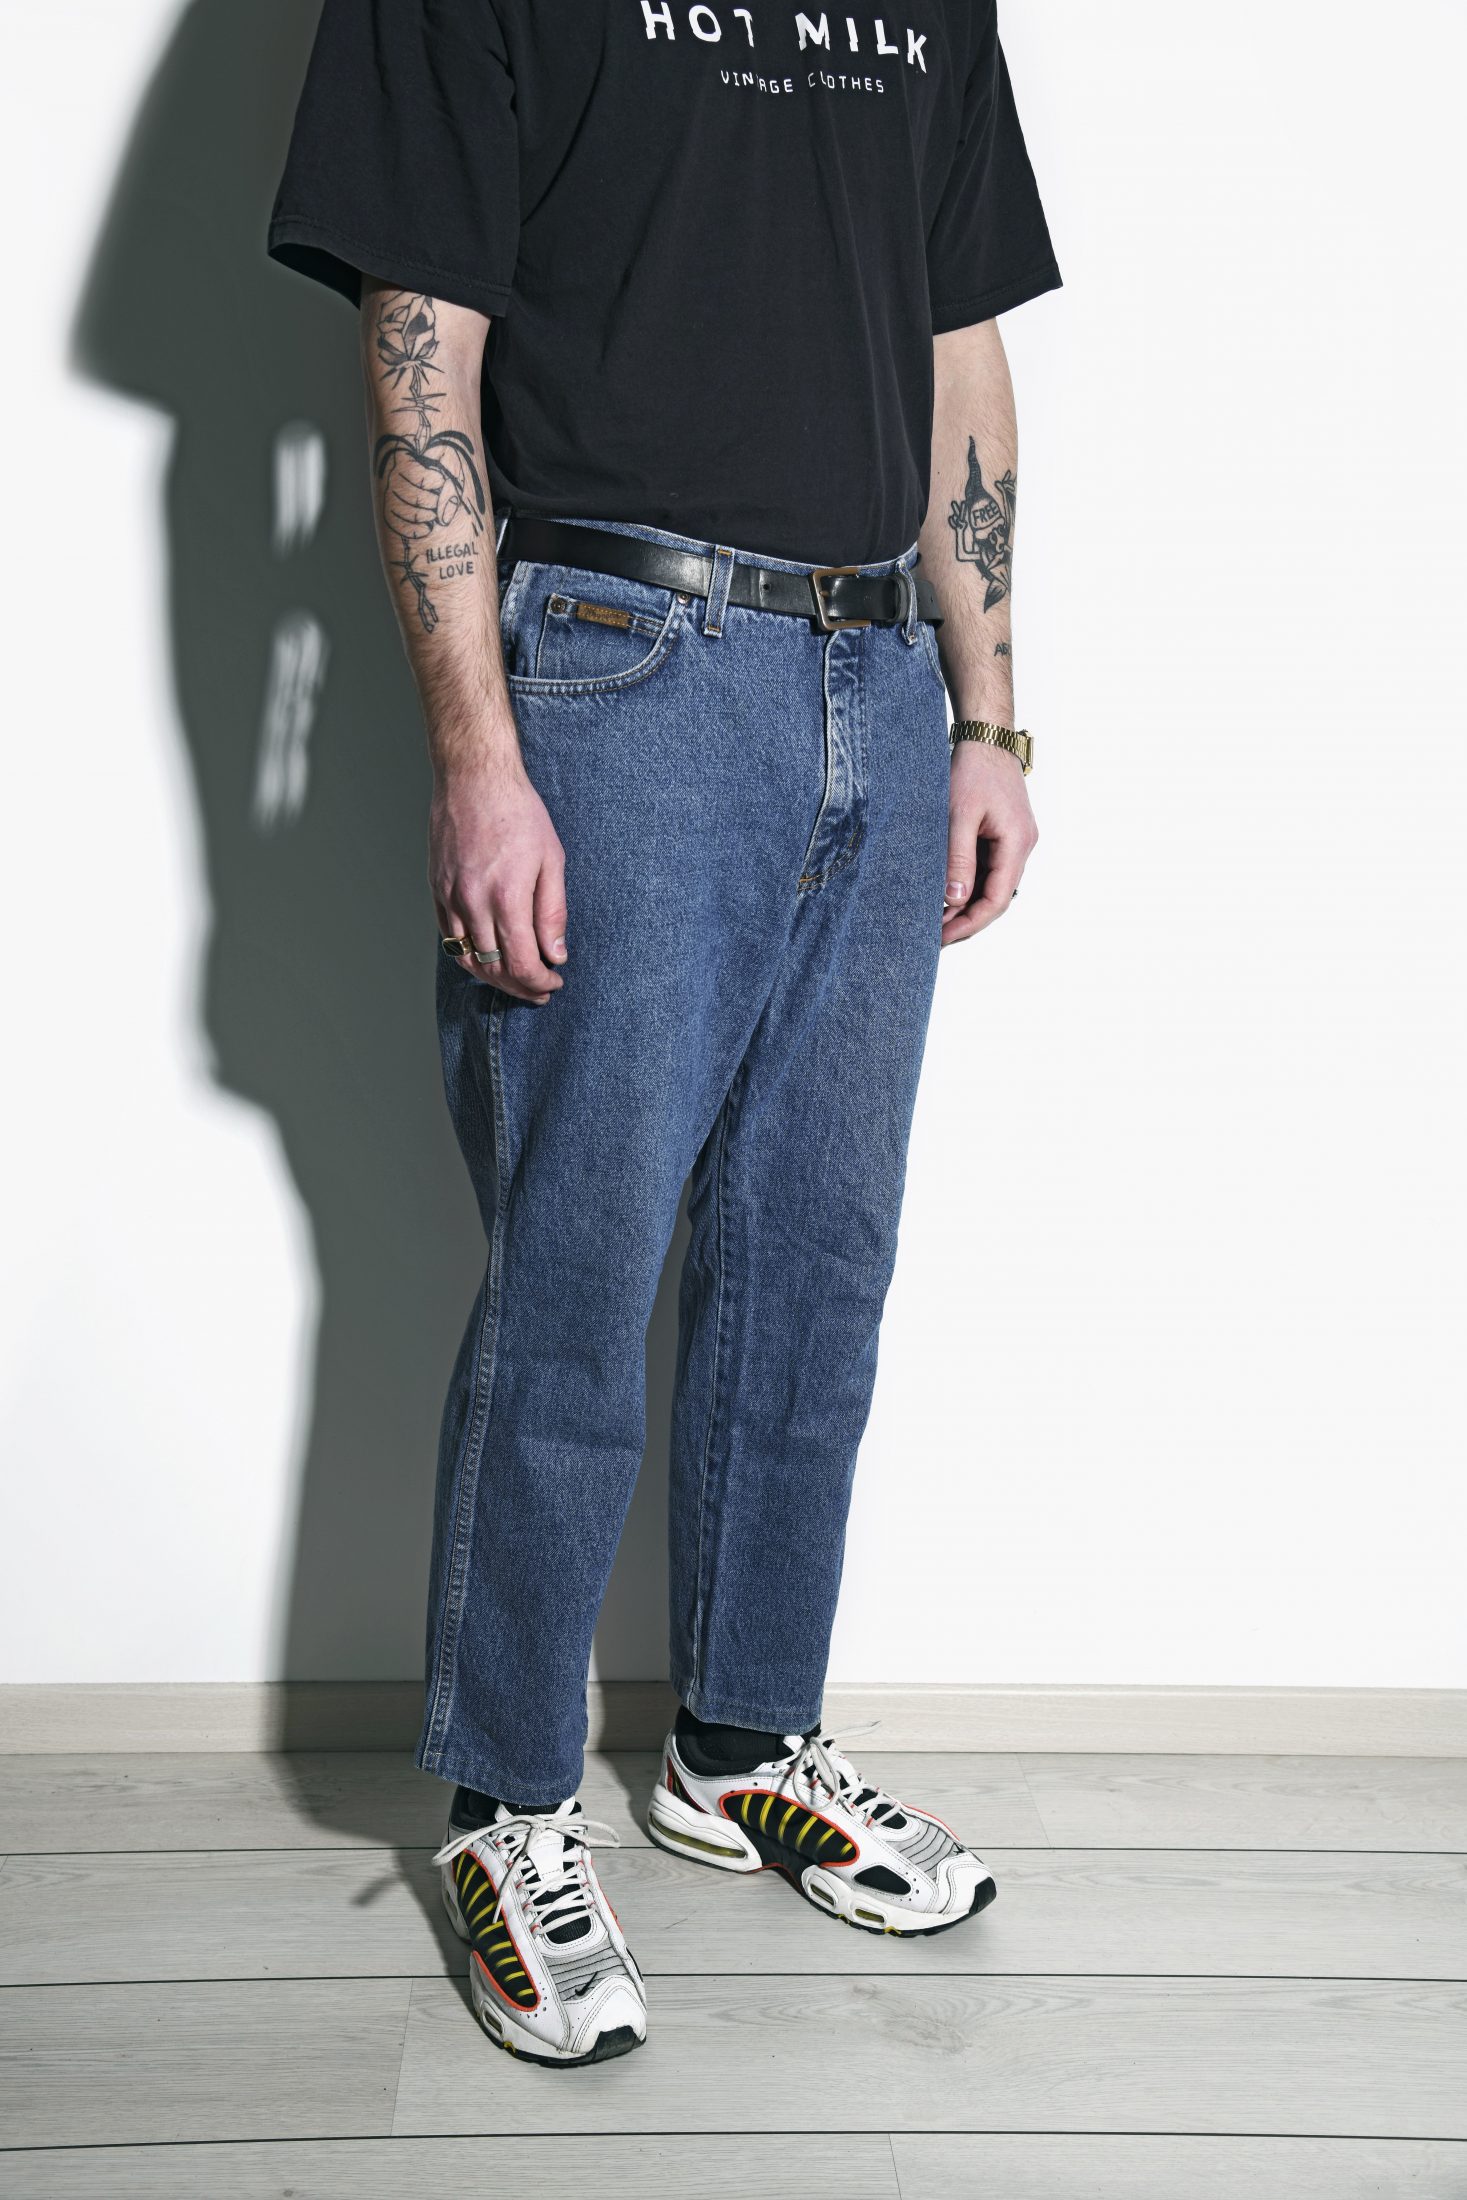 WRANGLER vintage jeans mens | HOT MILK vintage clothing online